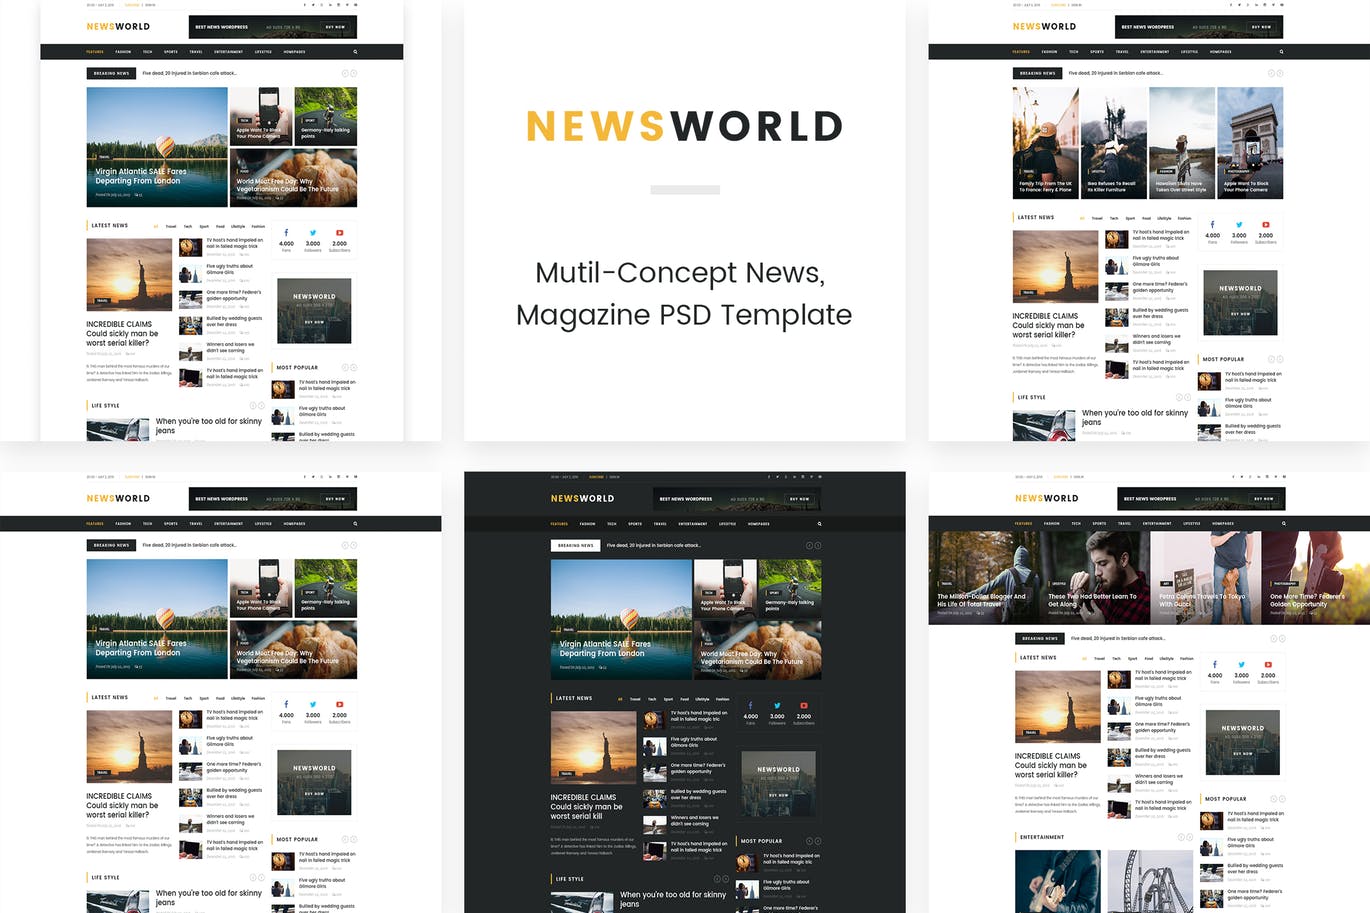 新闻资讯杂志类网站设计HTML模板非凡图库精选 Newsworld | Mutil-Concept Magazine HTML5 Template插图